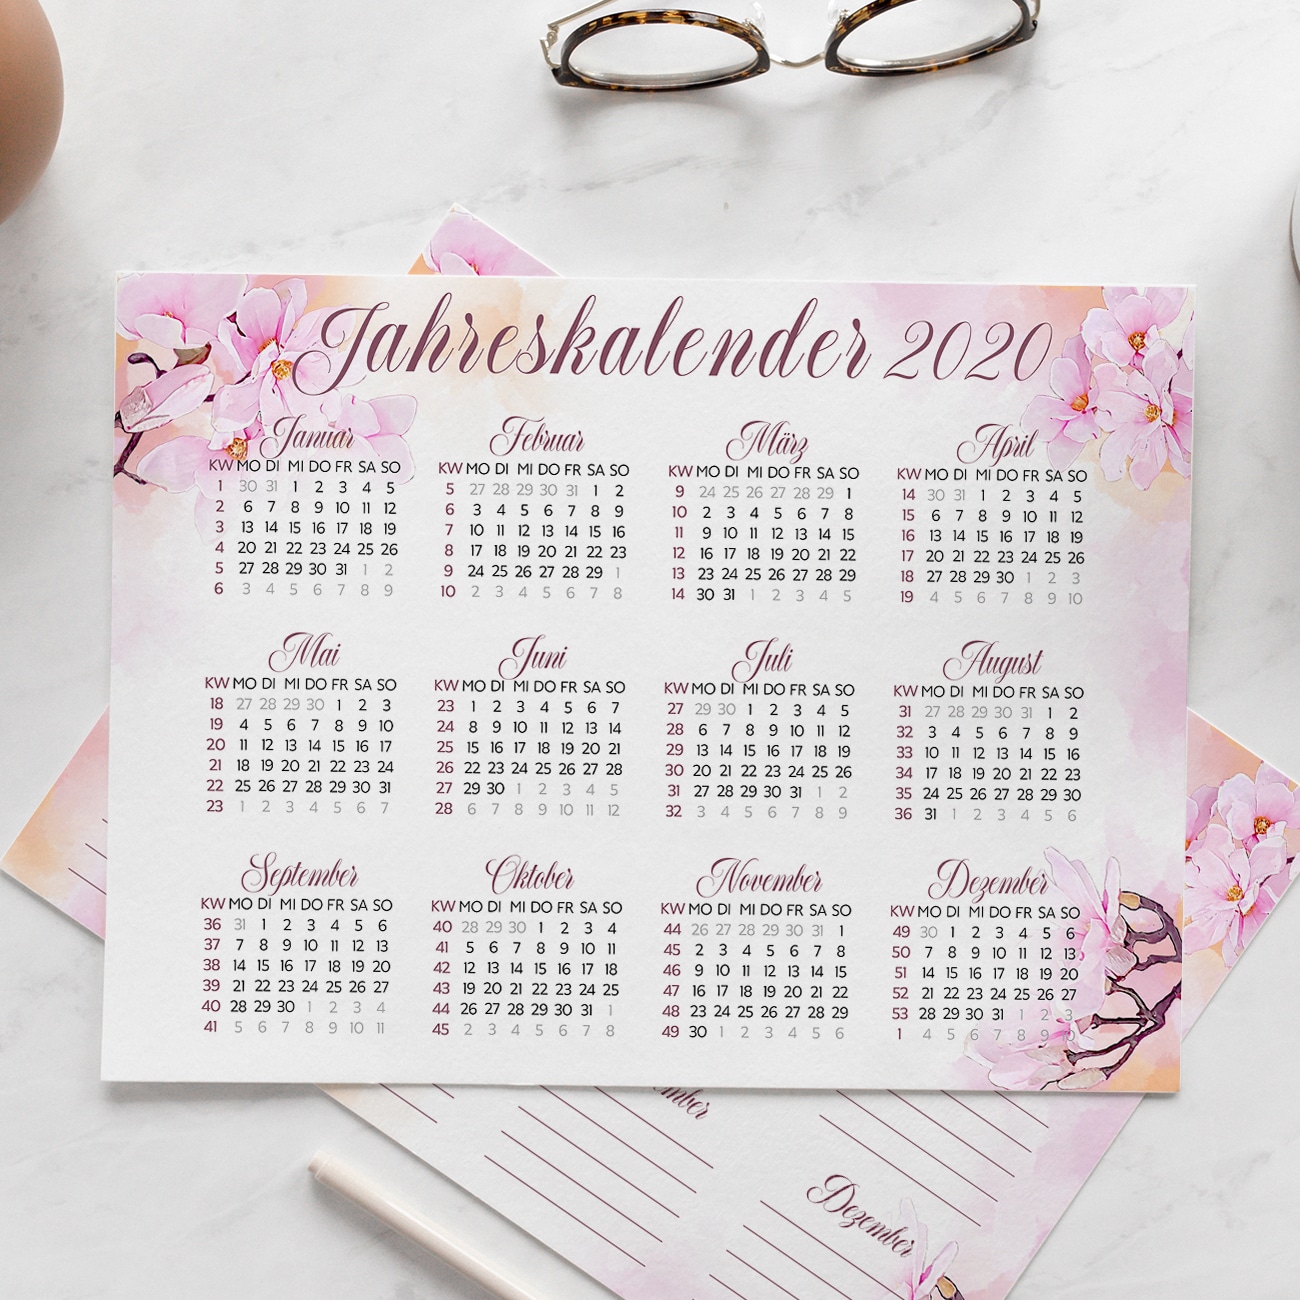 Jahreskalender 2020 Kalender zum Ausdrucken modern blumen mit kalenderwochen